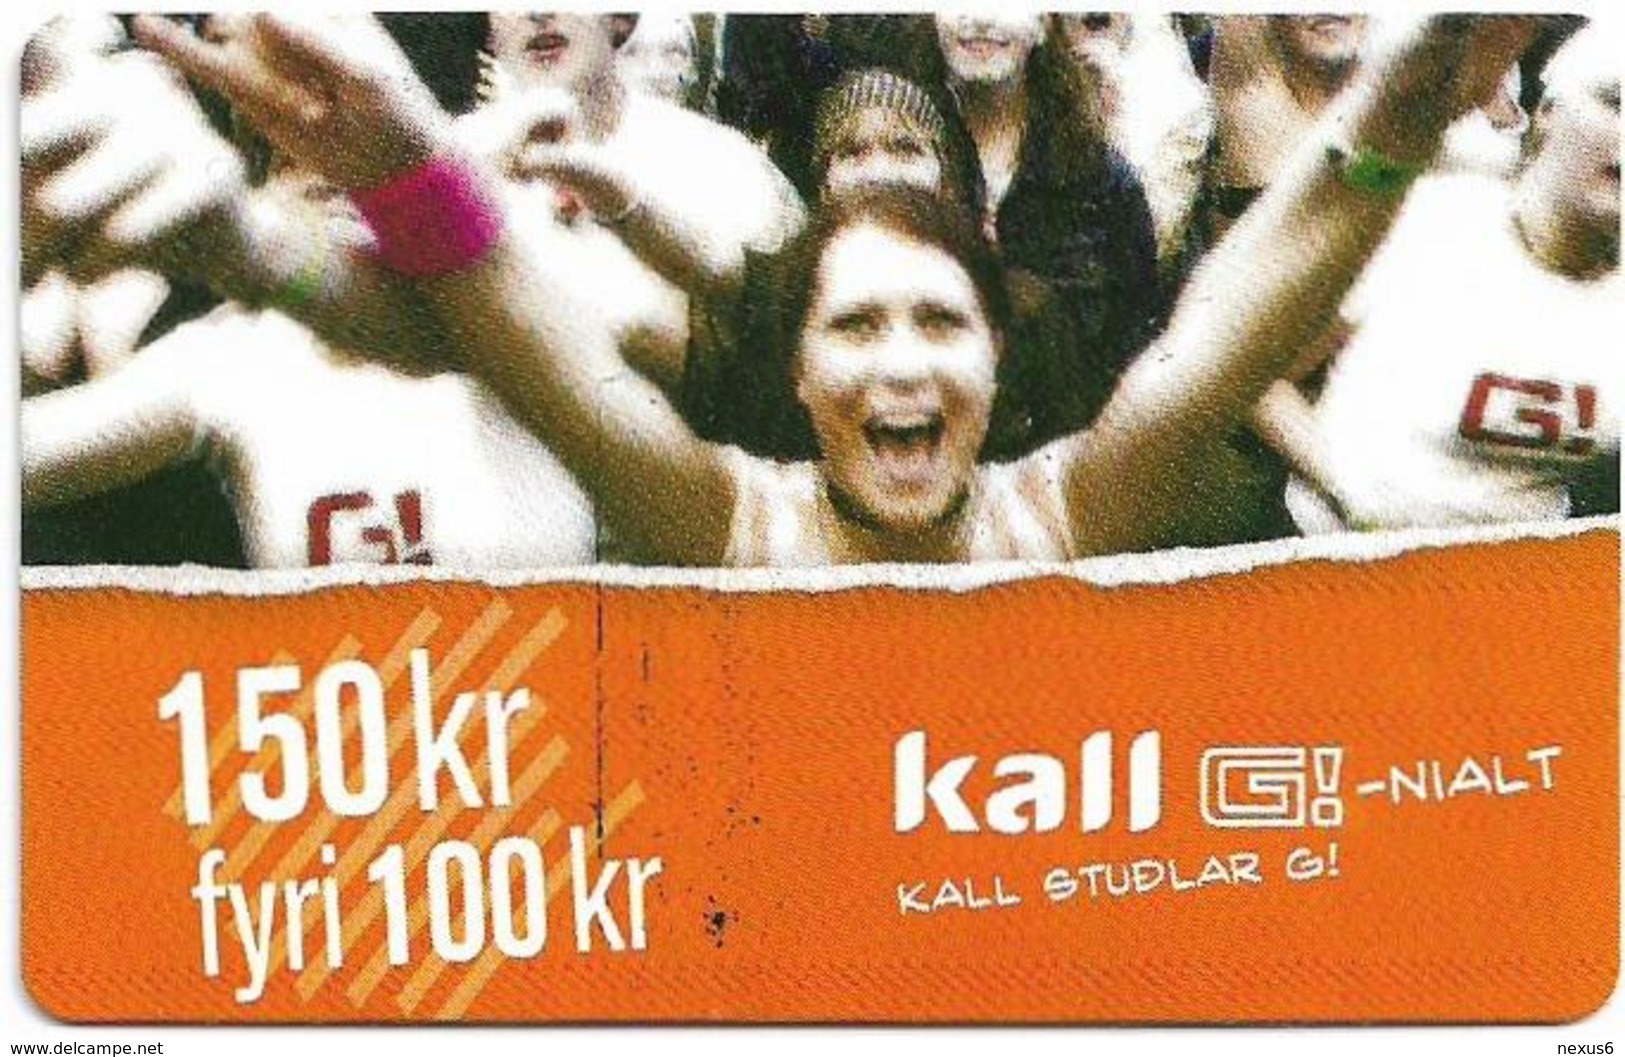 Faroe - Kall Studlar, 150Kr. GSM Refill, Exp.08.2005, Mint - Faroe Islands